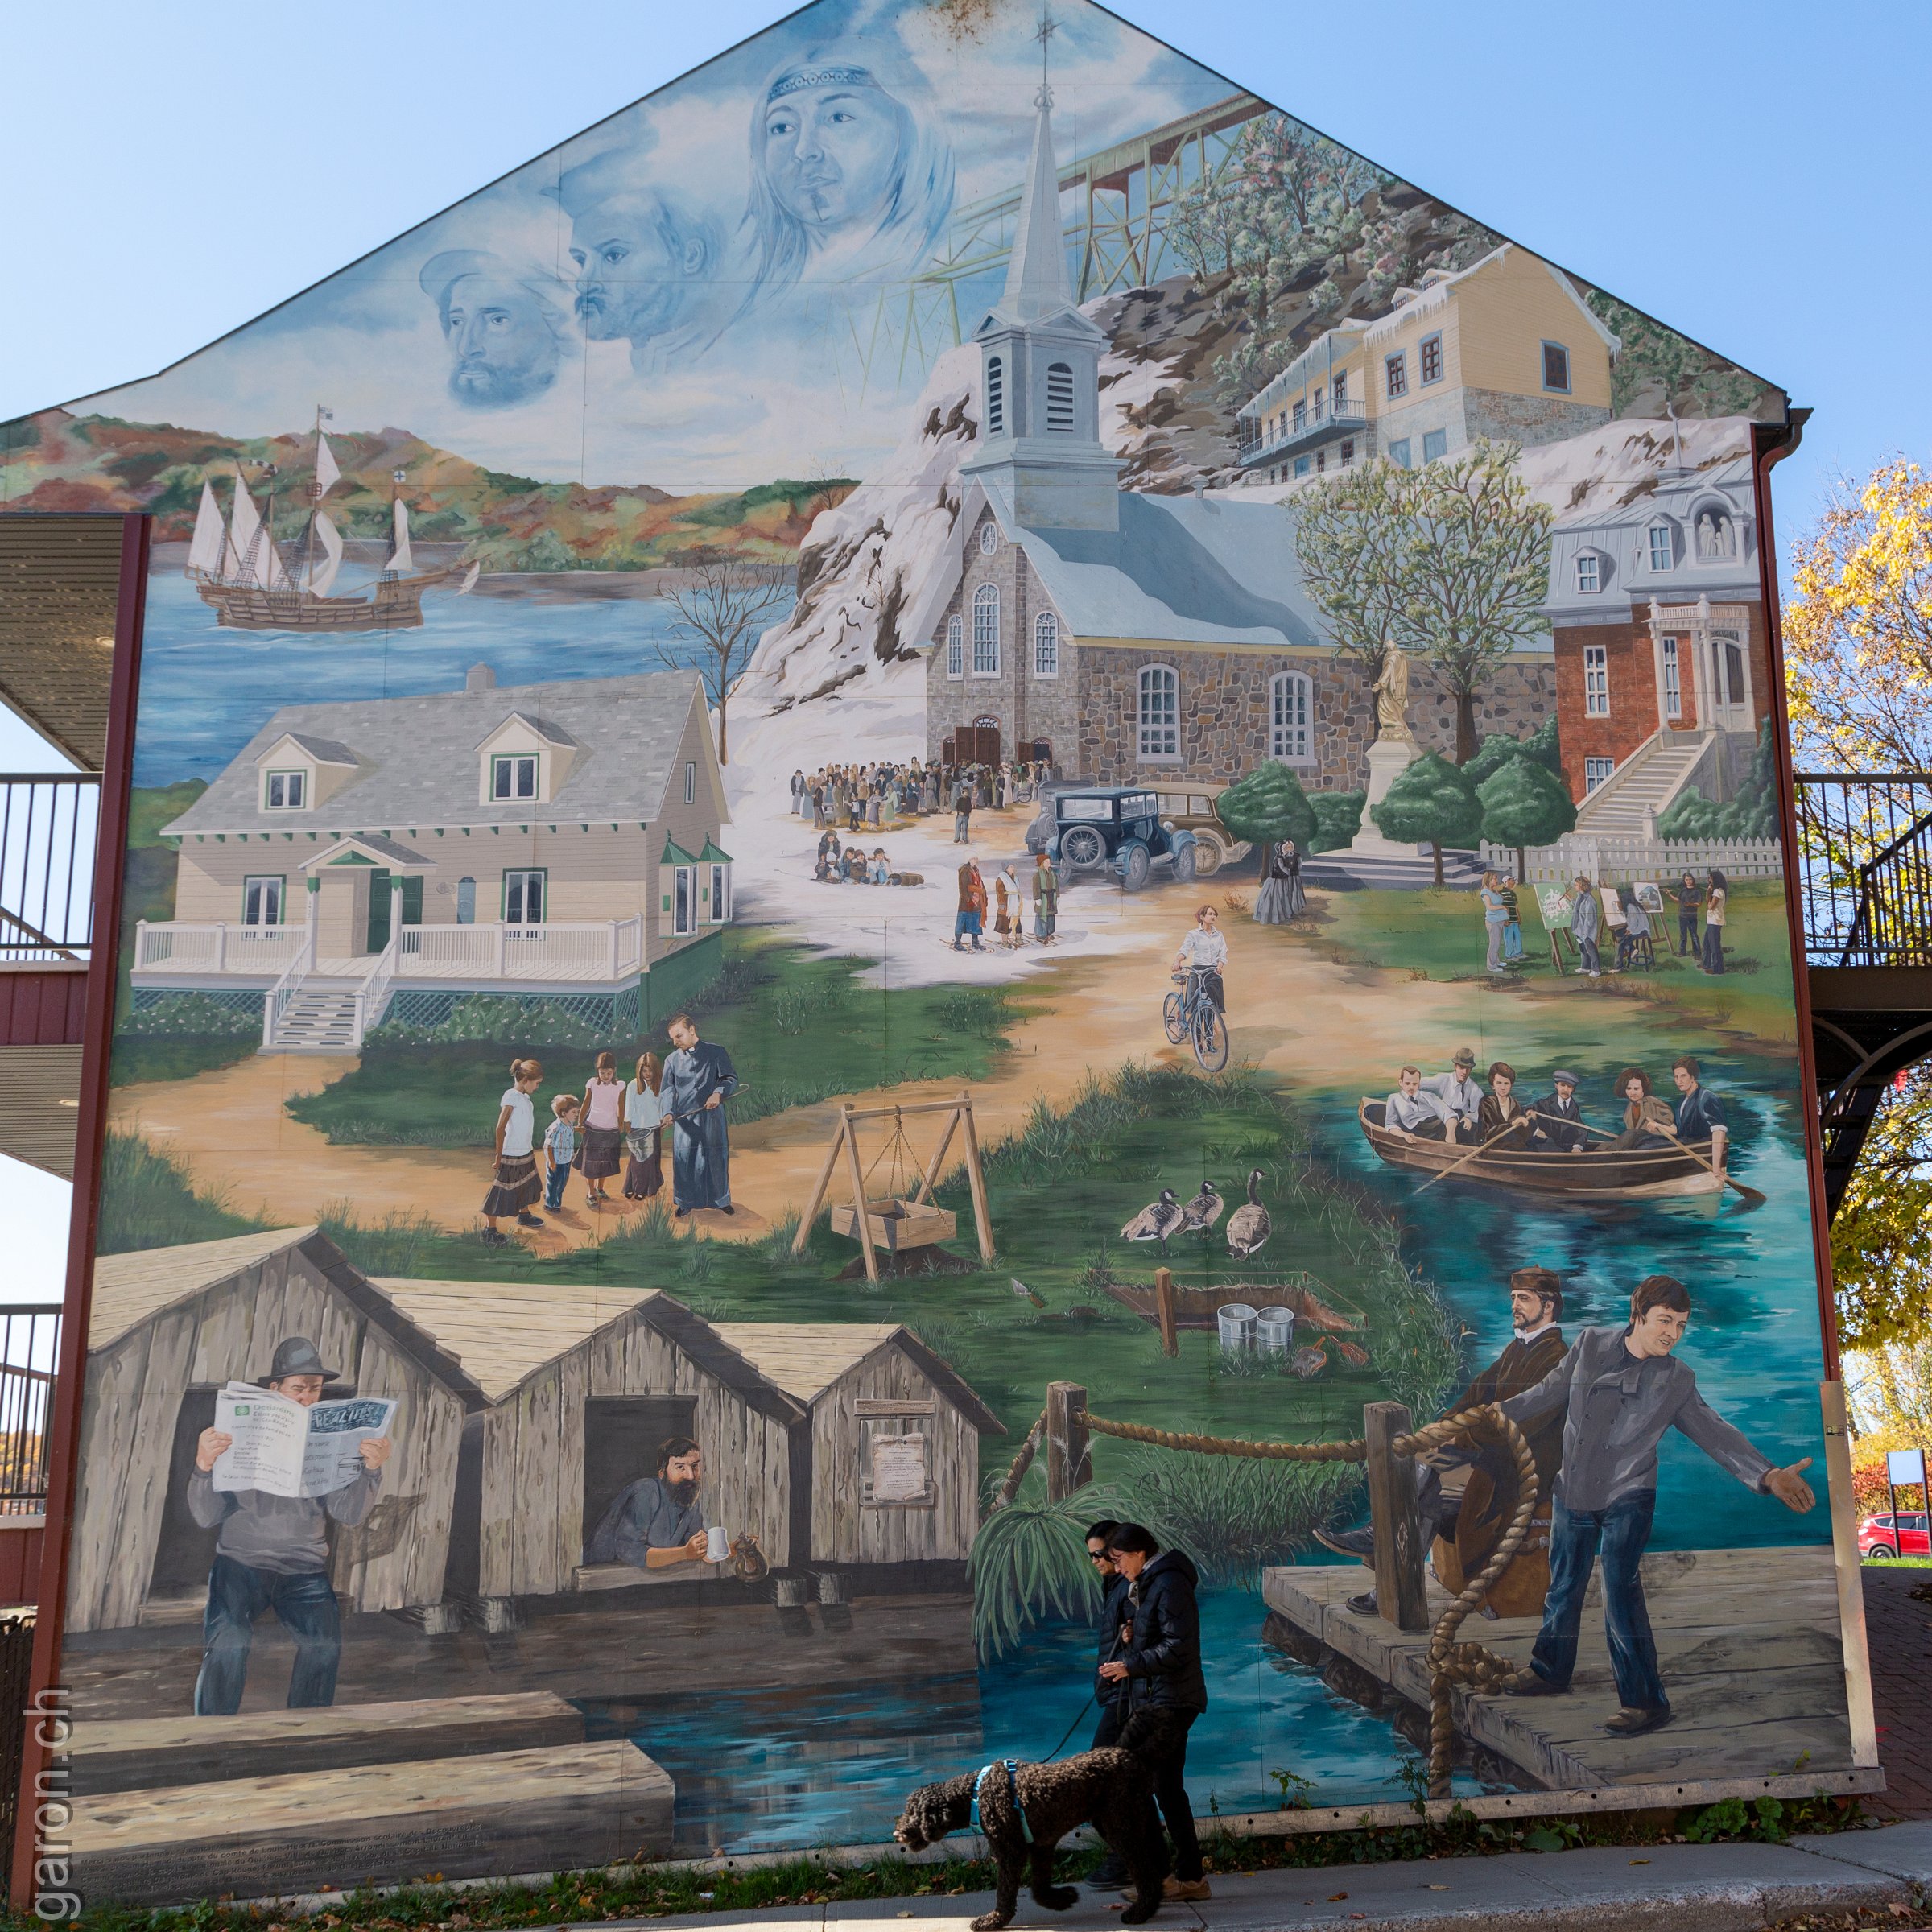 P.Q. Québec, Cap-Rouge, murale https://goo.gl/maps/5DKLf7pXPXKJeFPH7